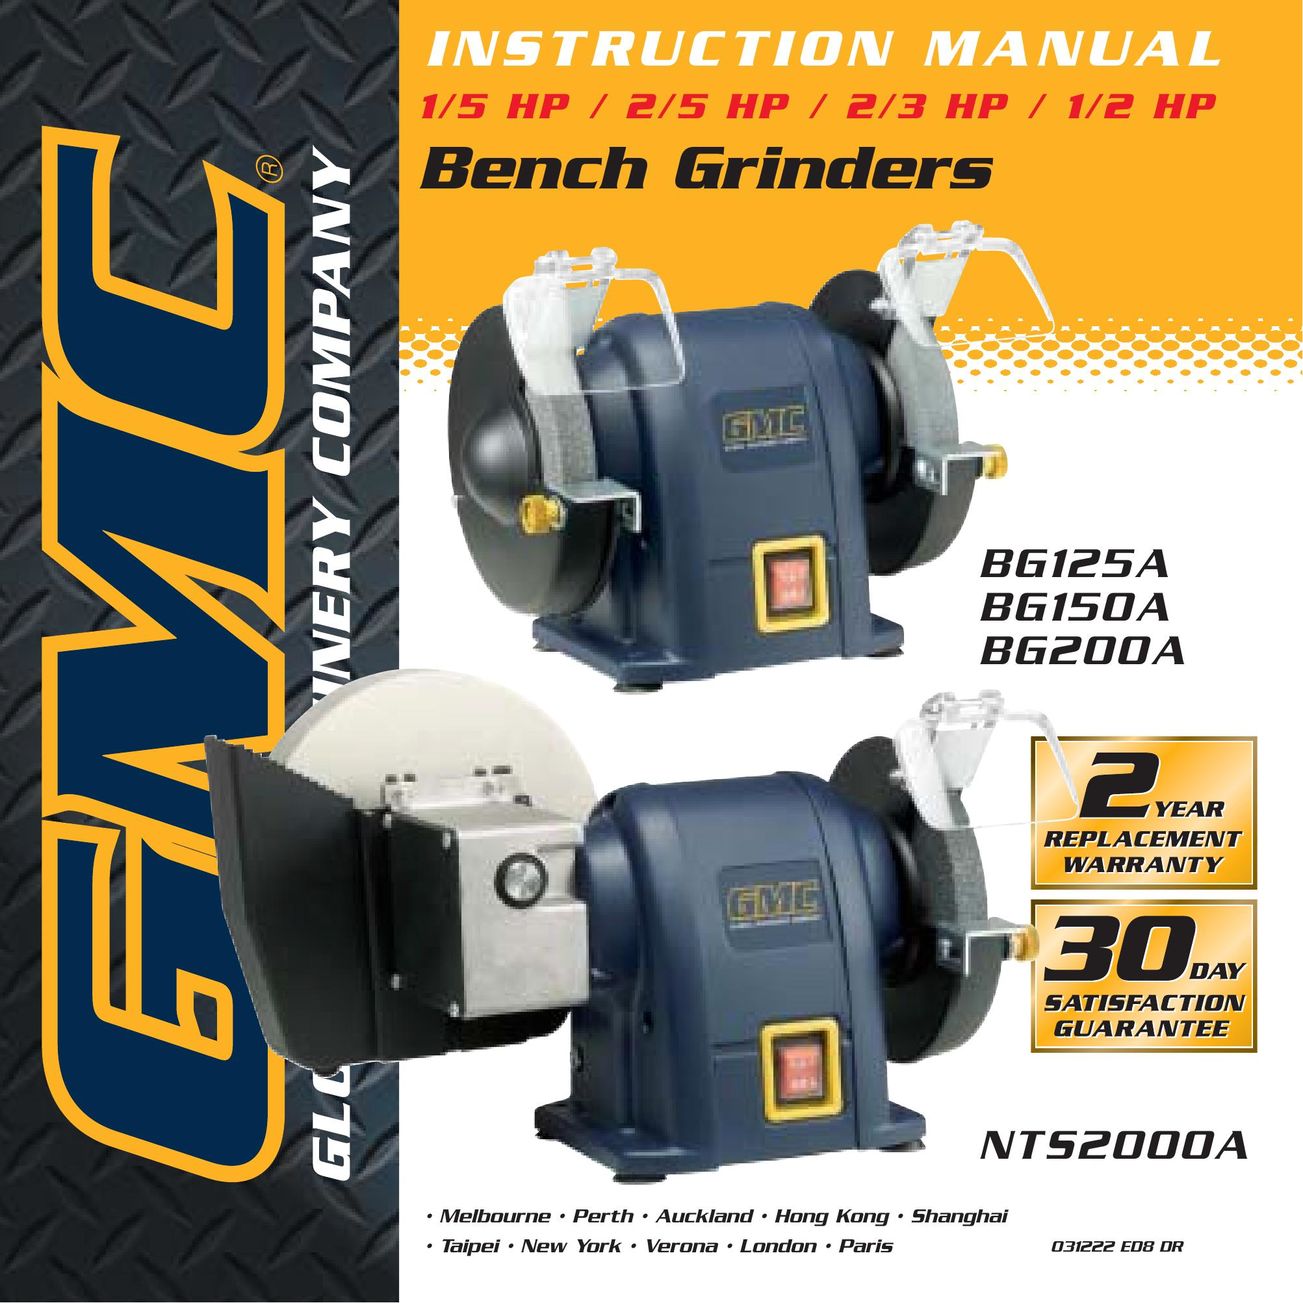 Global Machinery Company BG125A Grinder User Manual